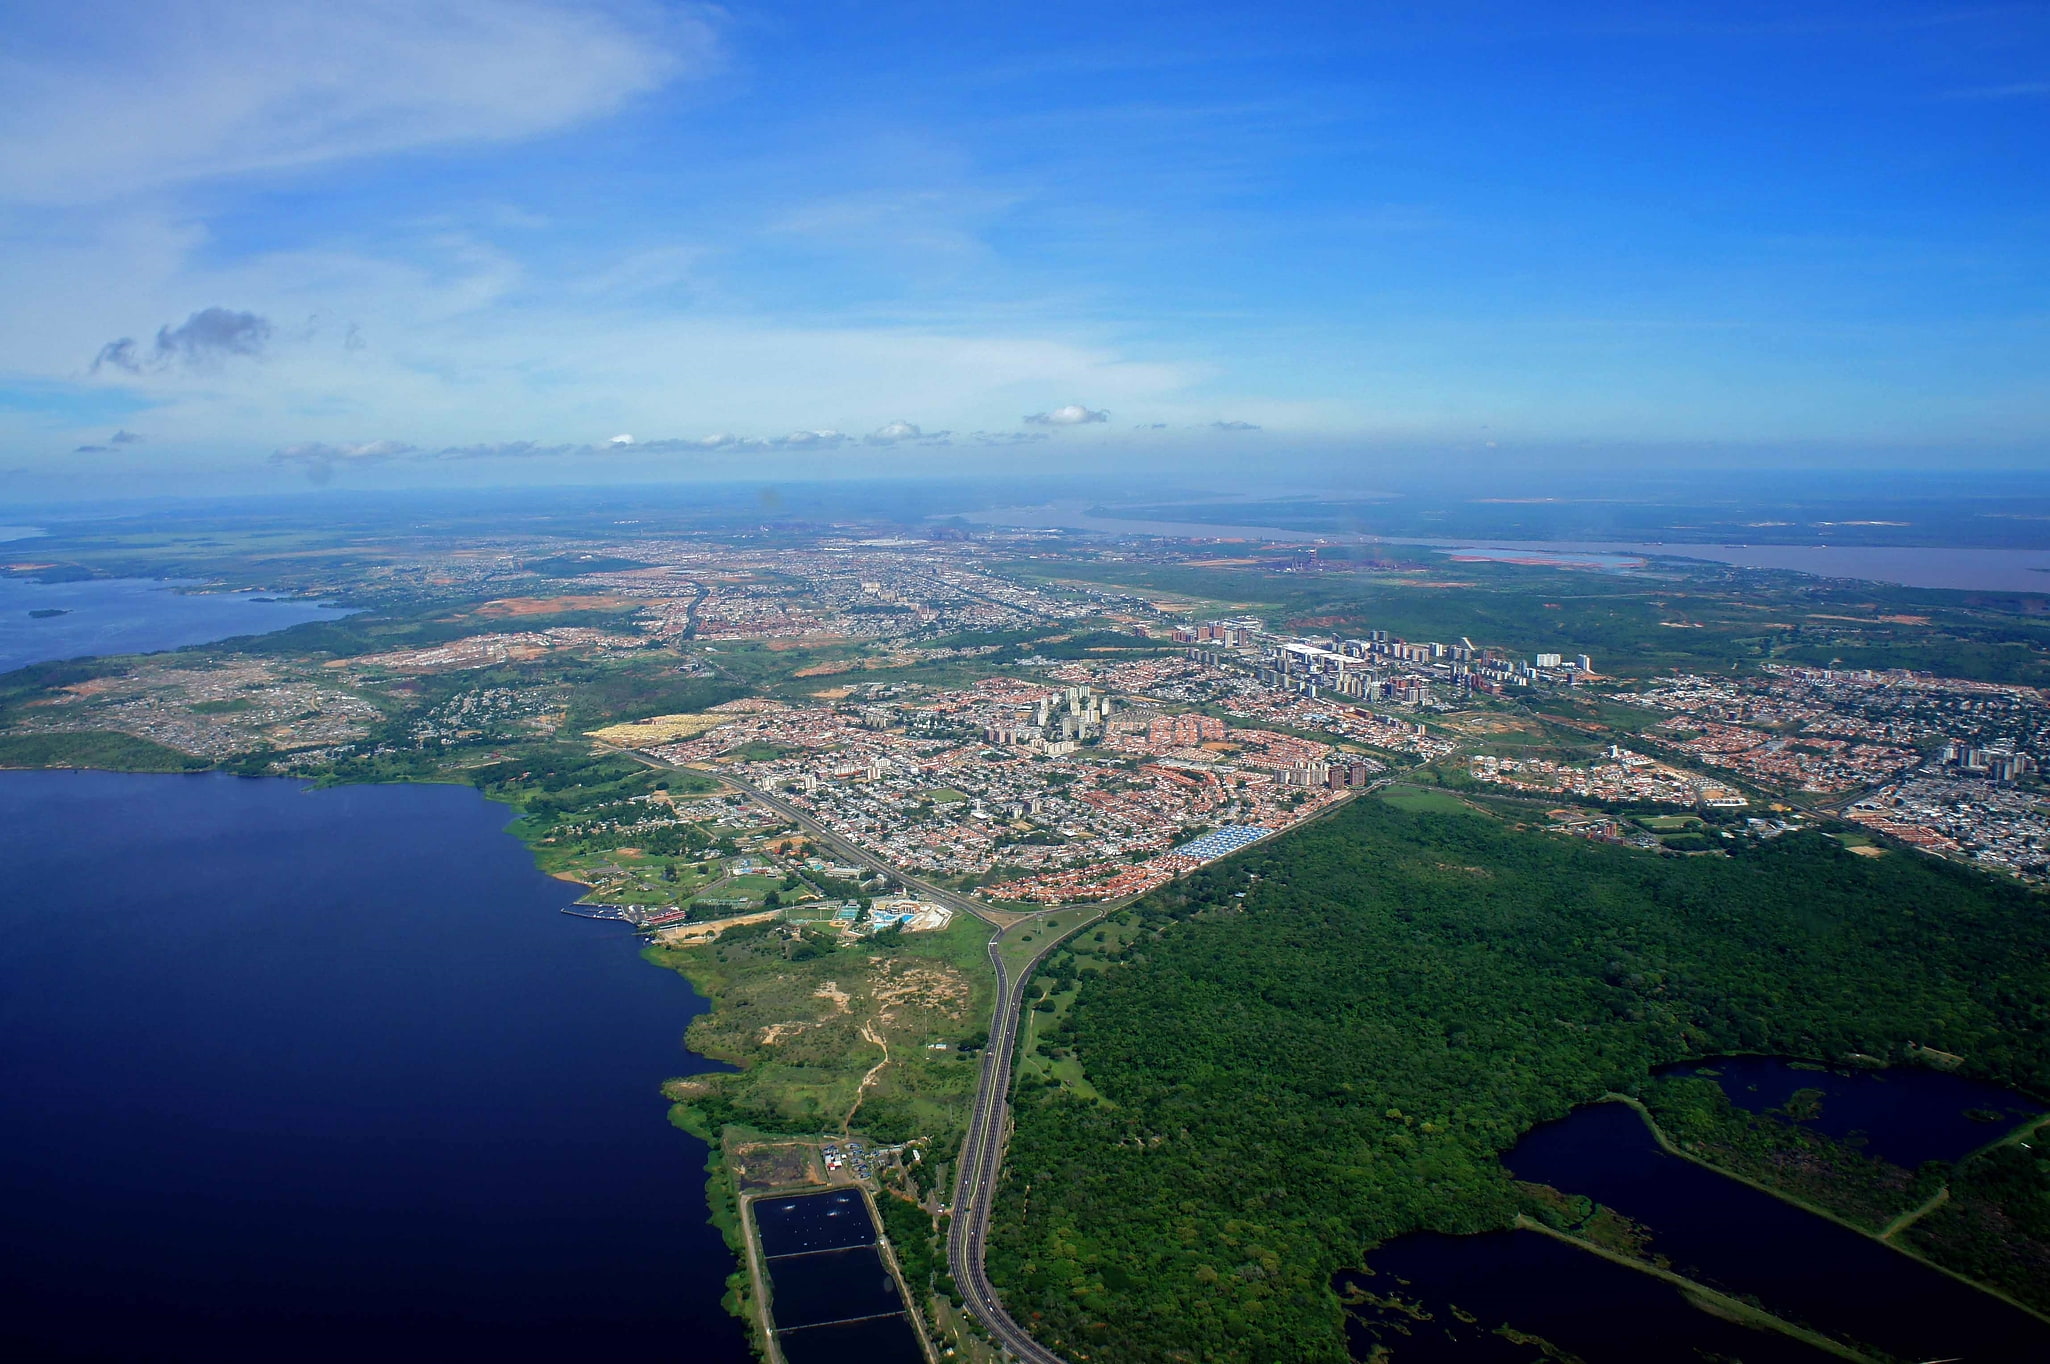 Ciudad Guayana, Venezuela